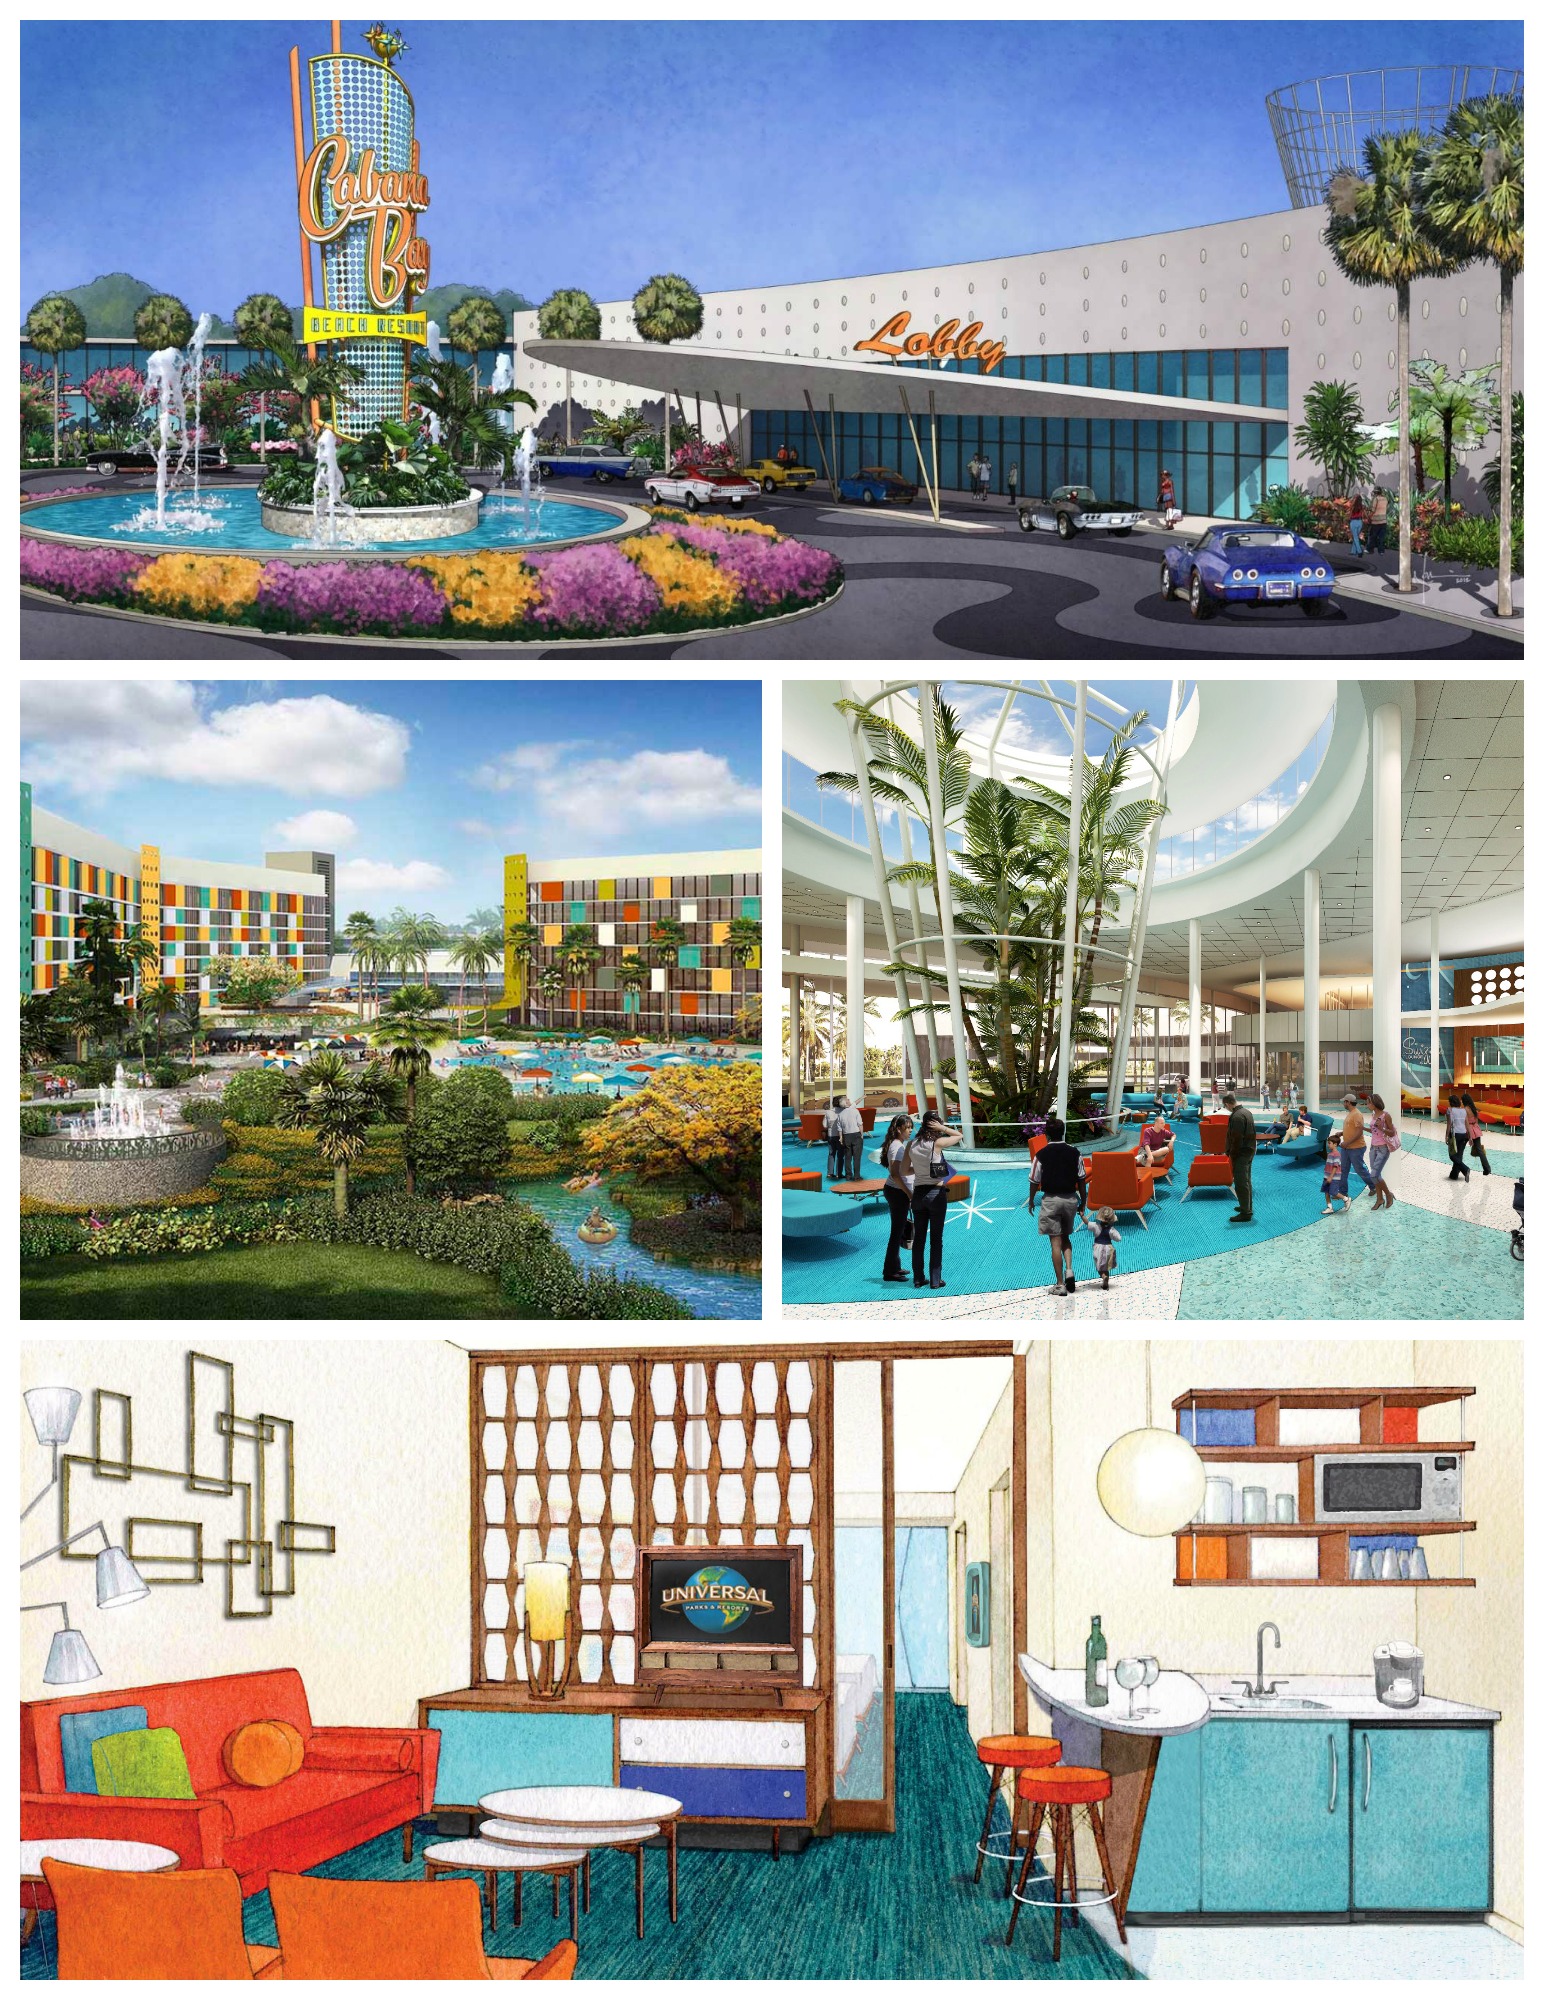 Universal-Orlando-Cabana-Bay-Beach-Resort-hotel